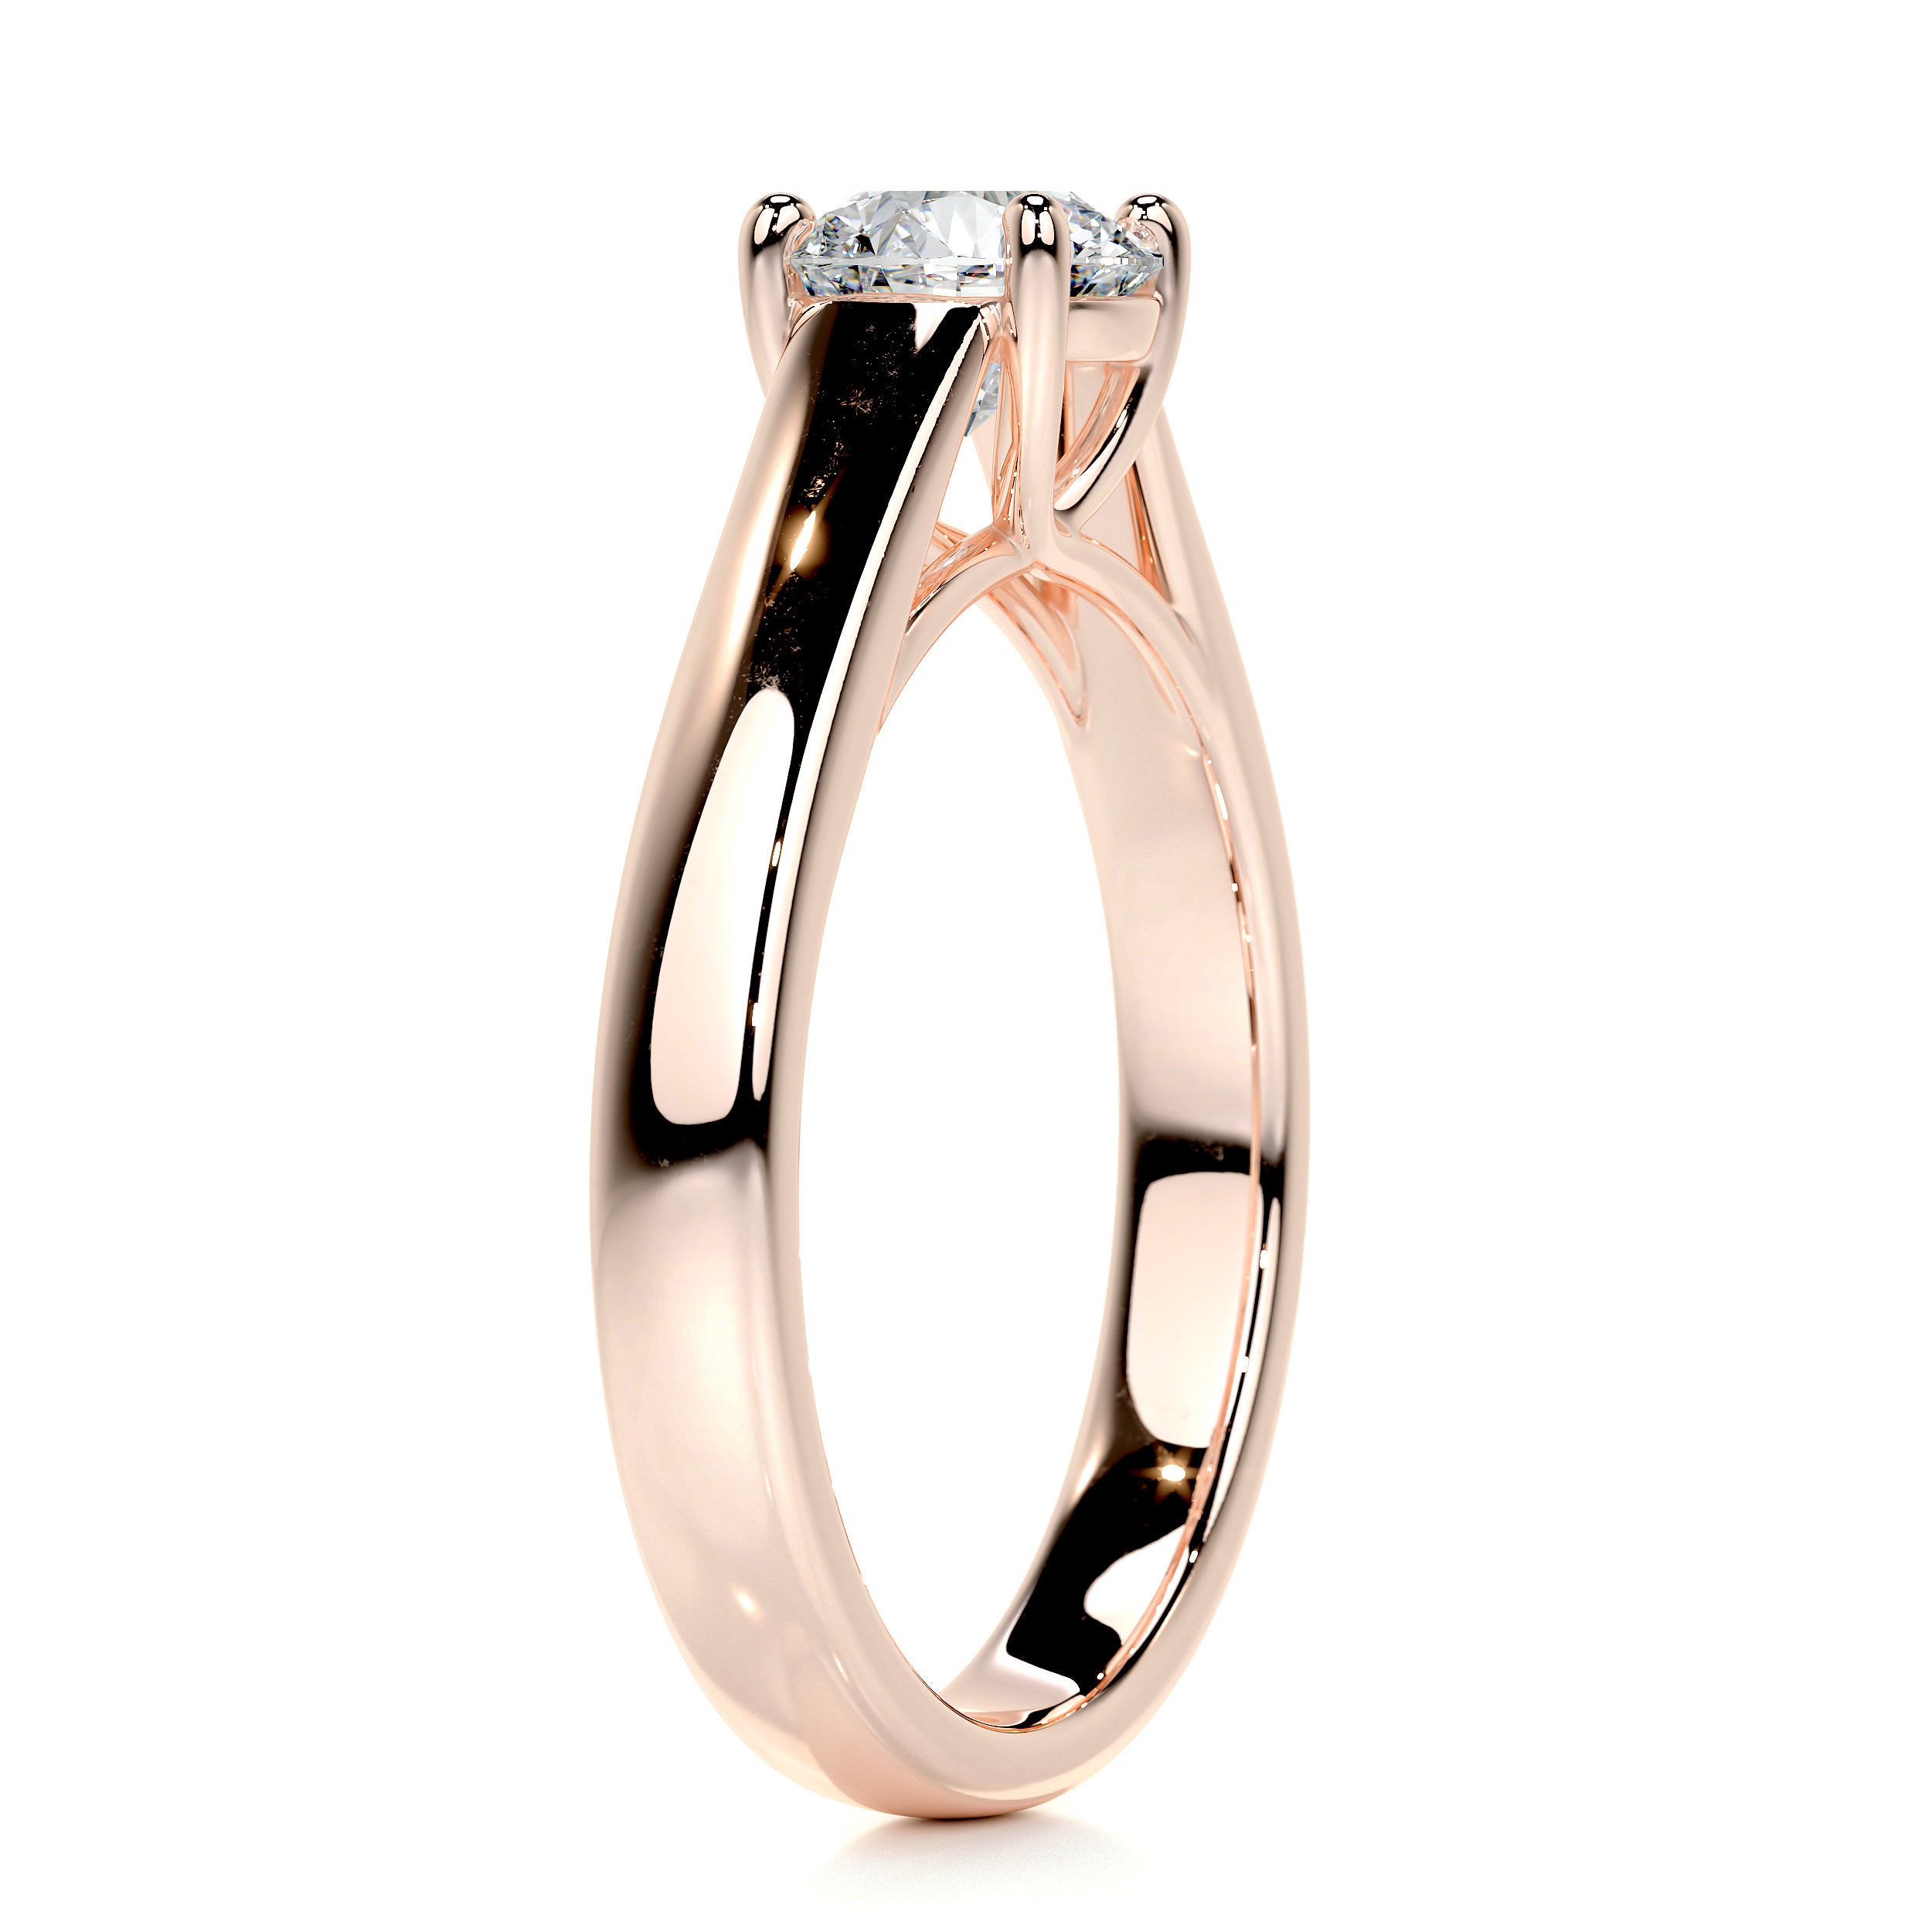 Nola Diamond Engagement Ring   (0.80 Carat) -14K Rose Gold